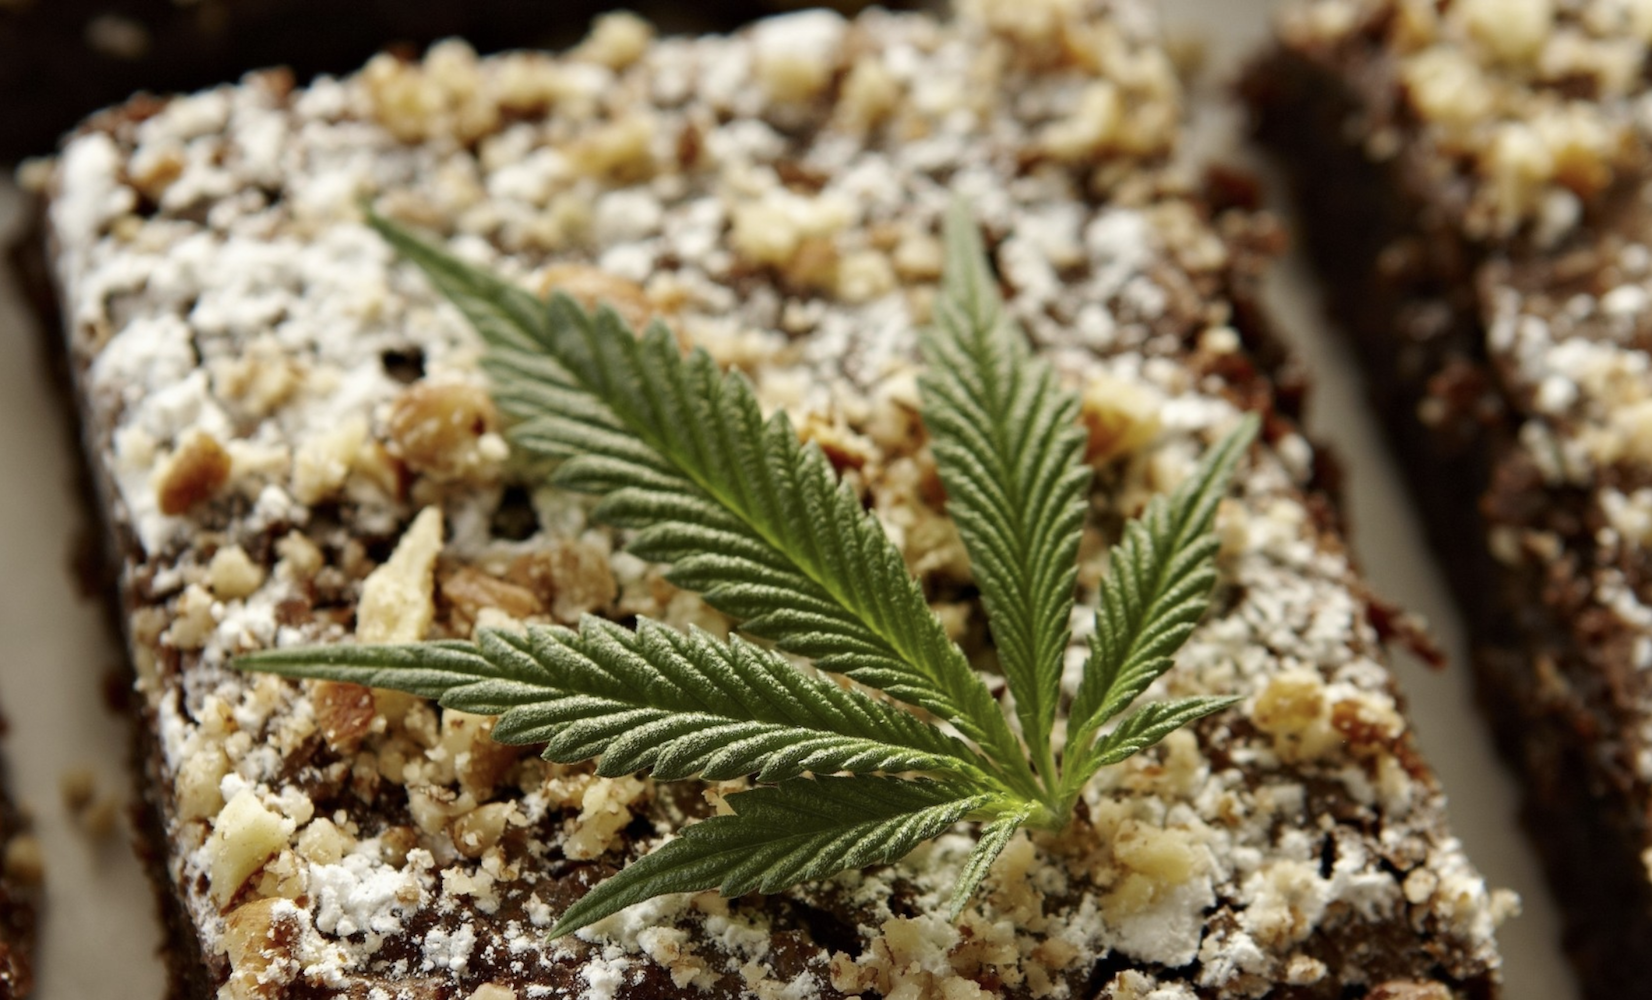 Трава план конопля краснеет стебель марихуаны